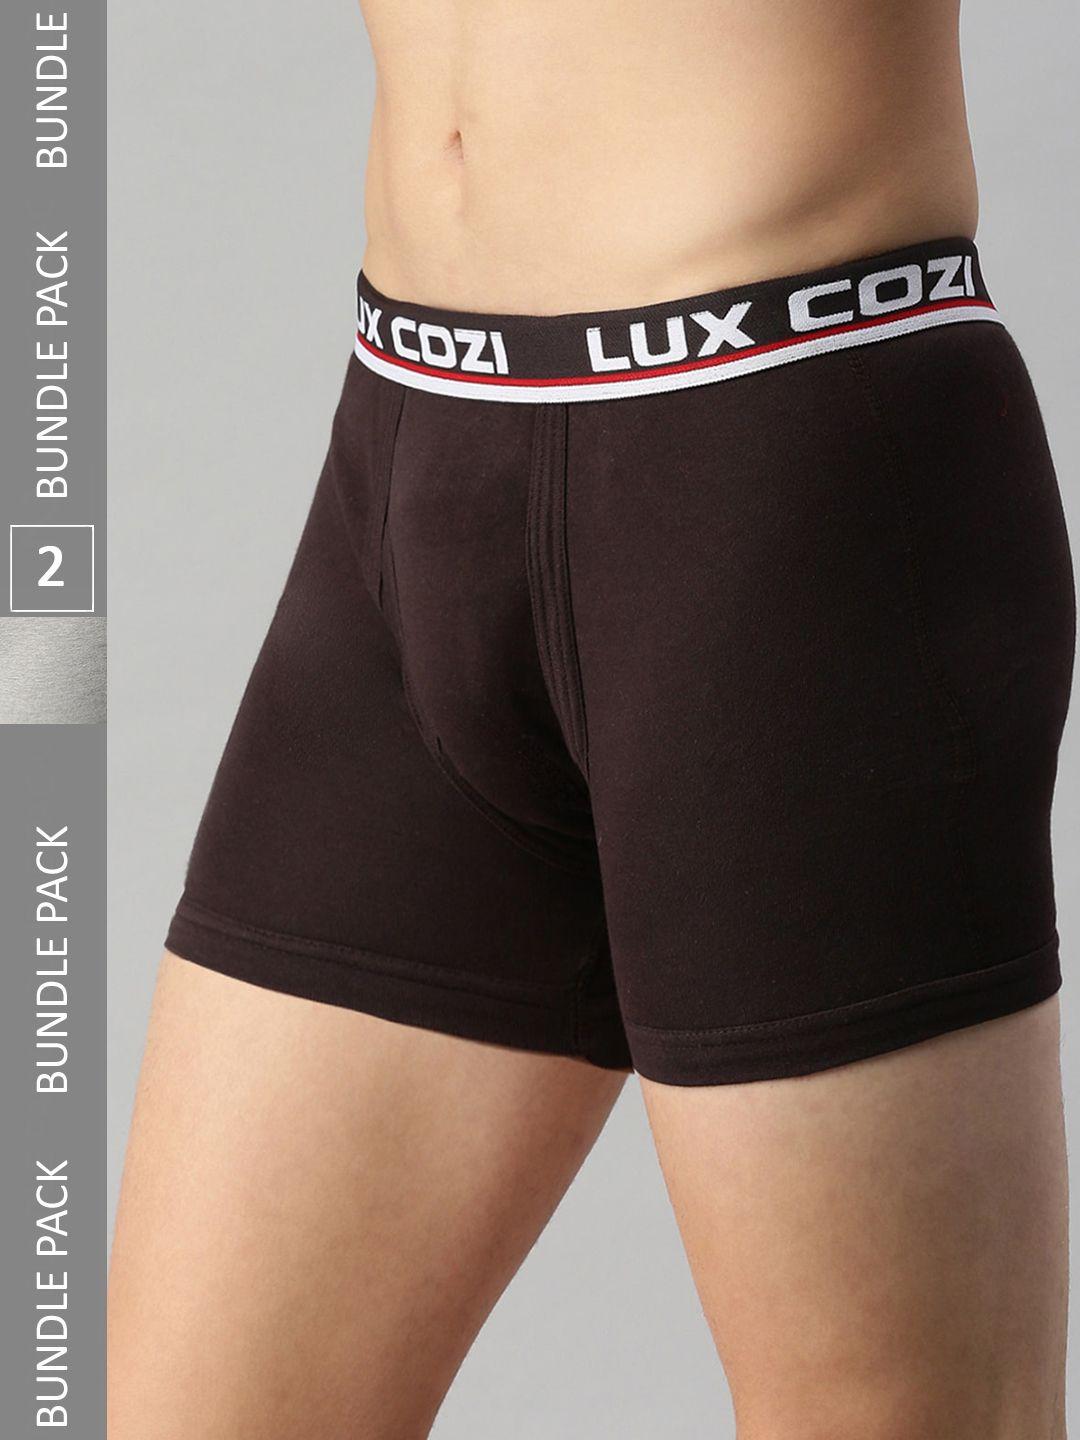 lux cozi men pack of 2 logo printed detail trunks